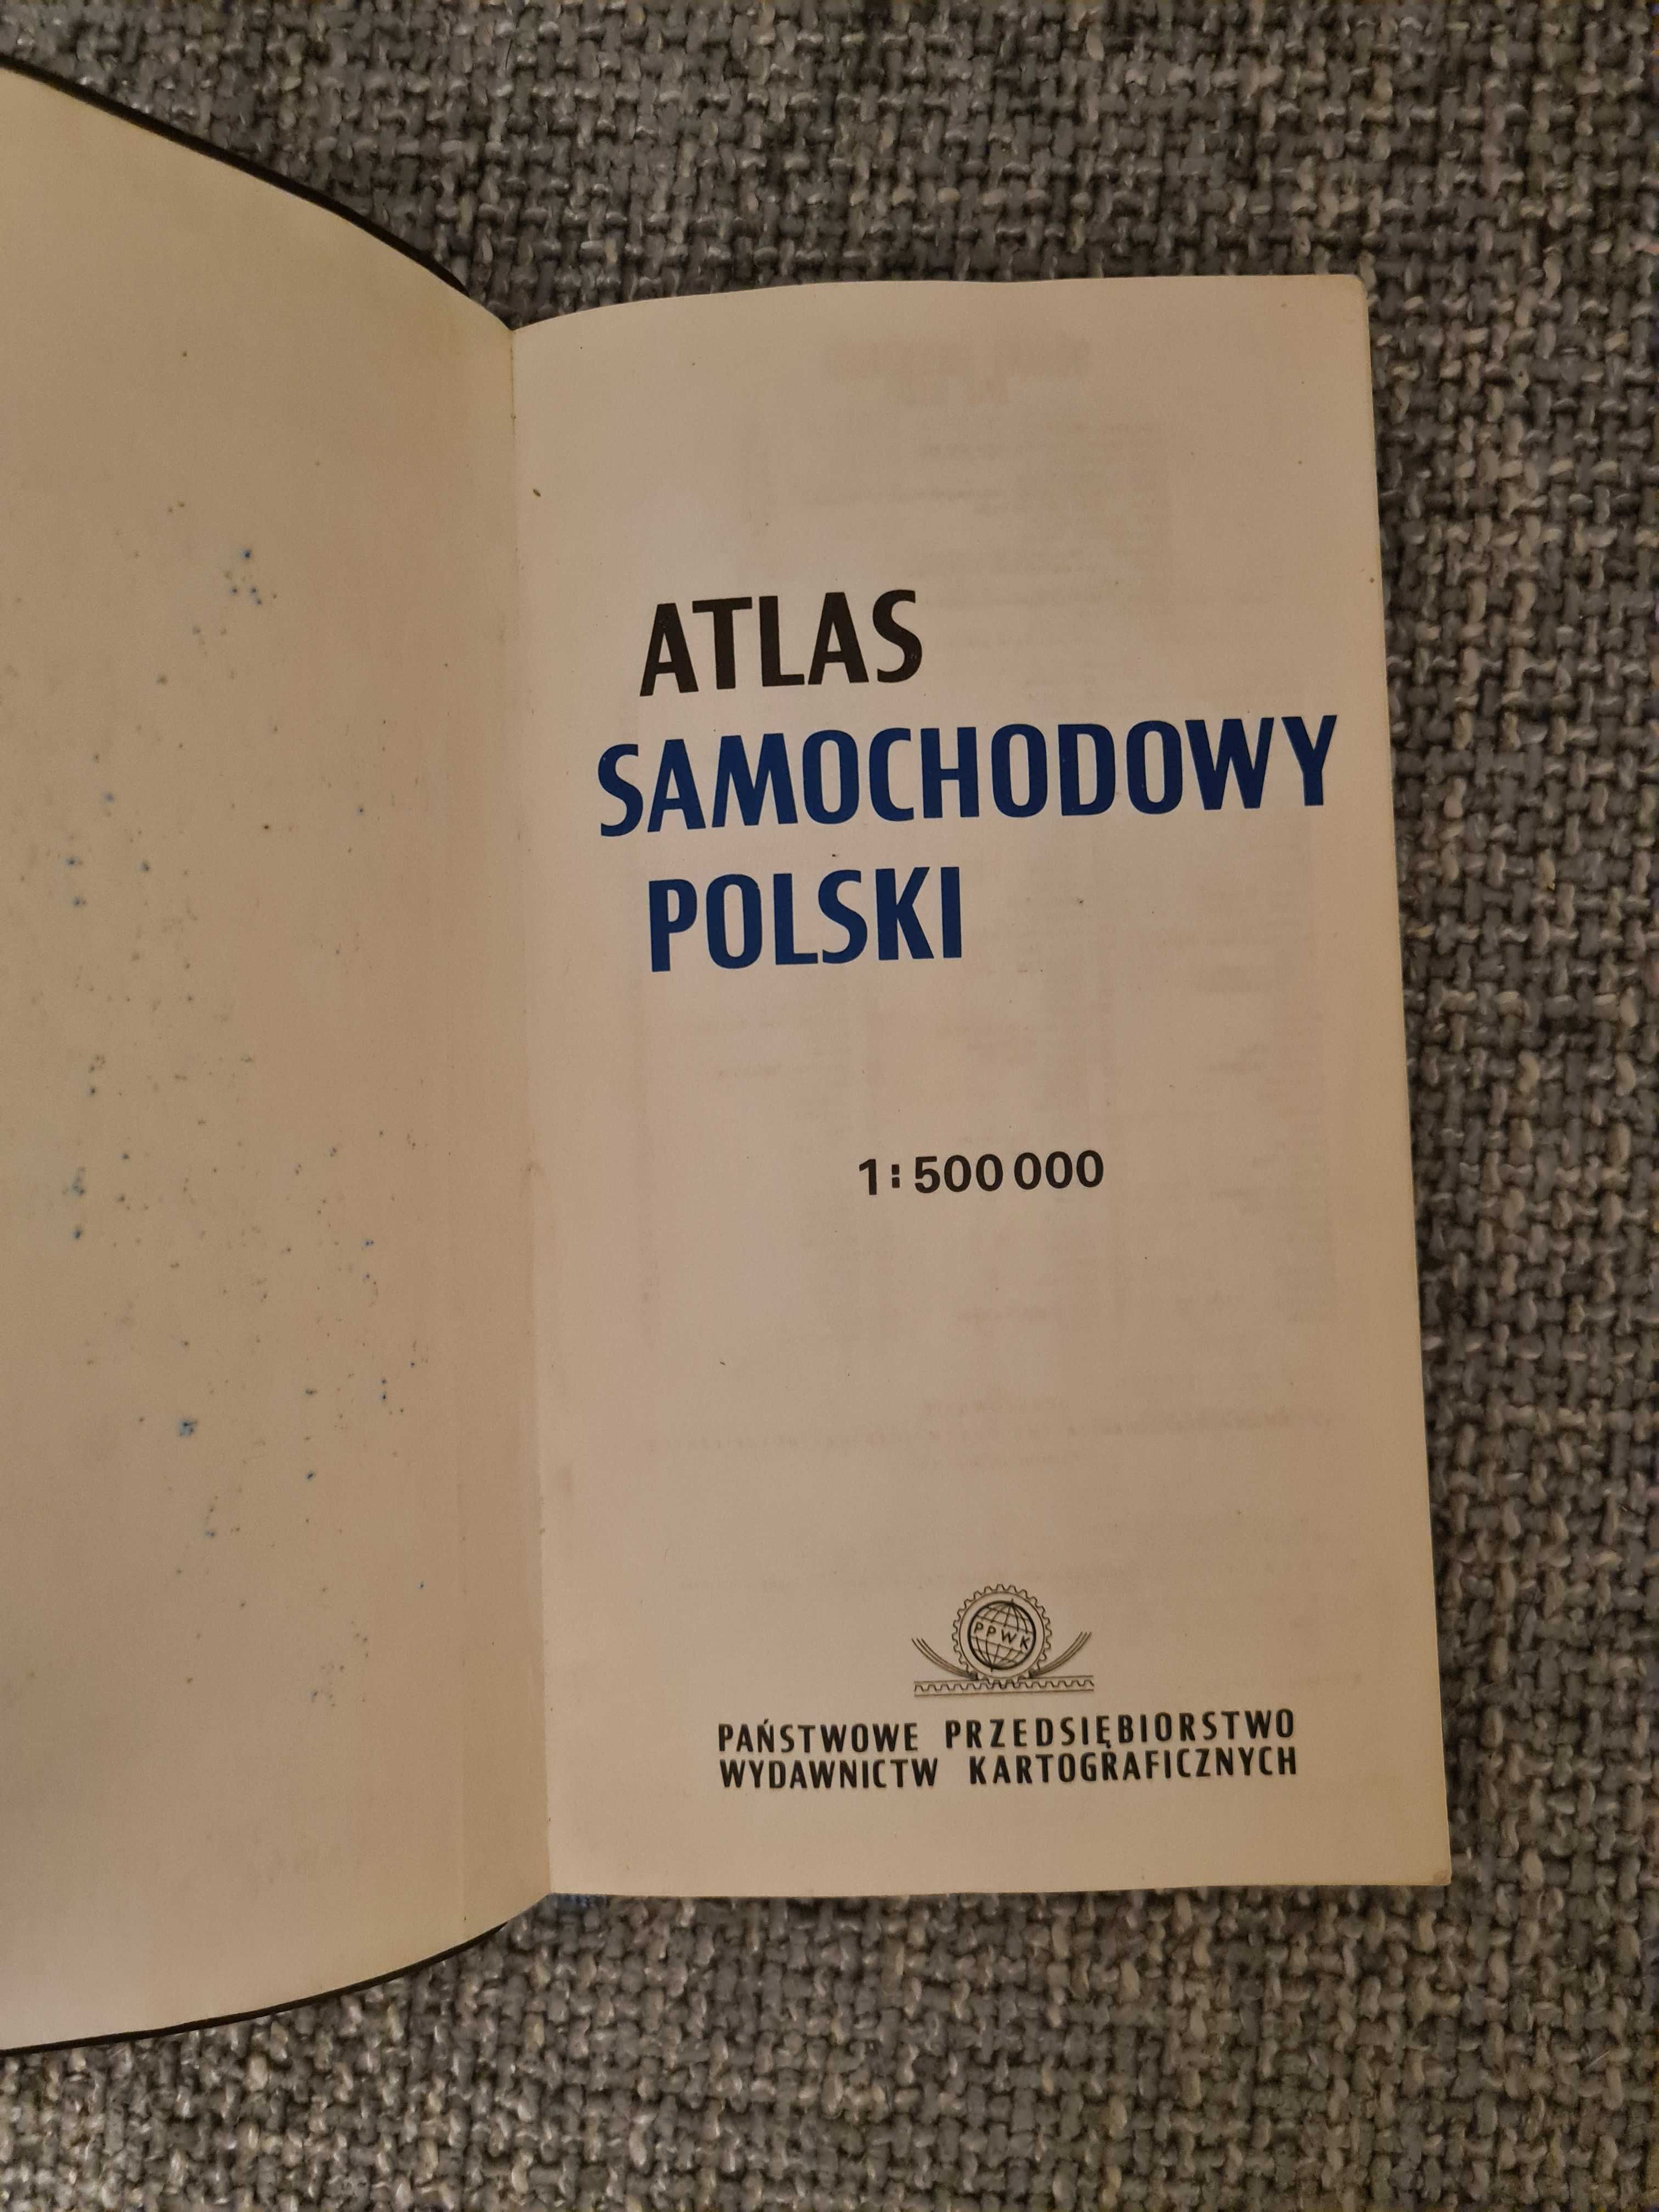 Stary atlas Polski dla tradycjonalistów